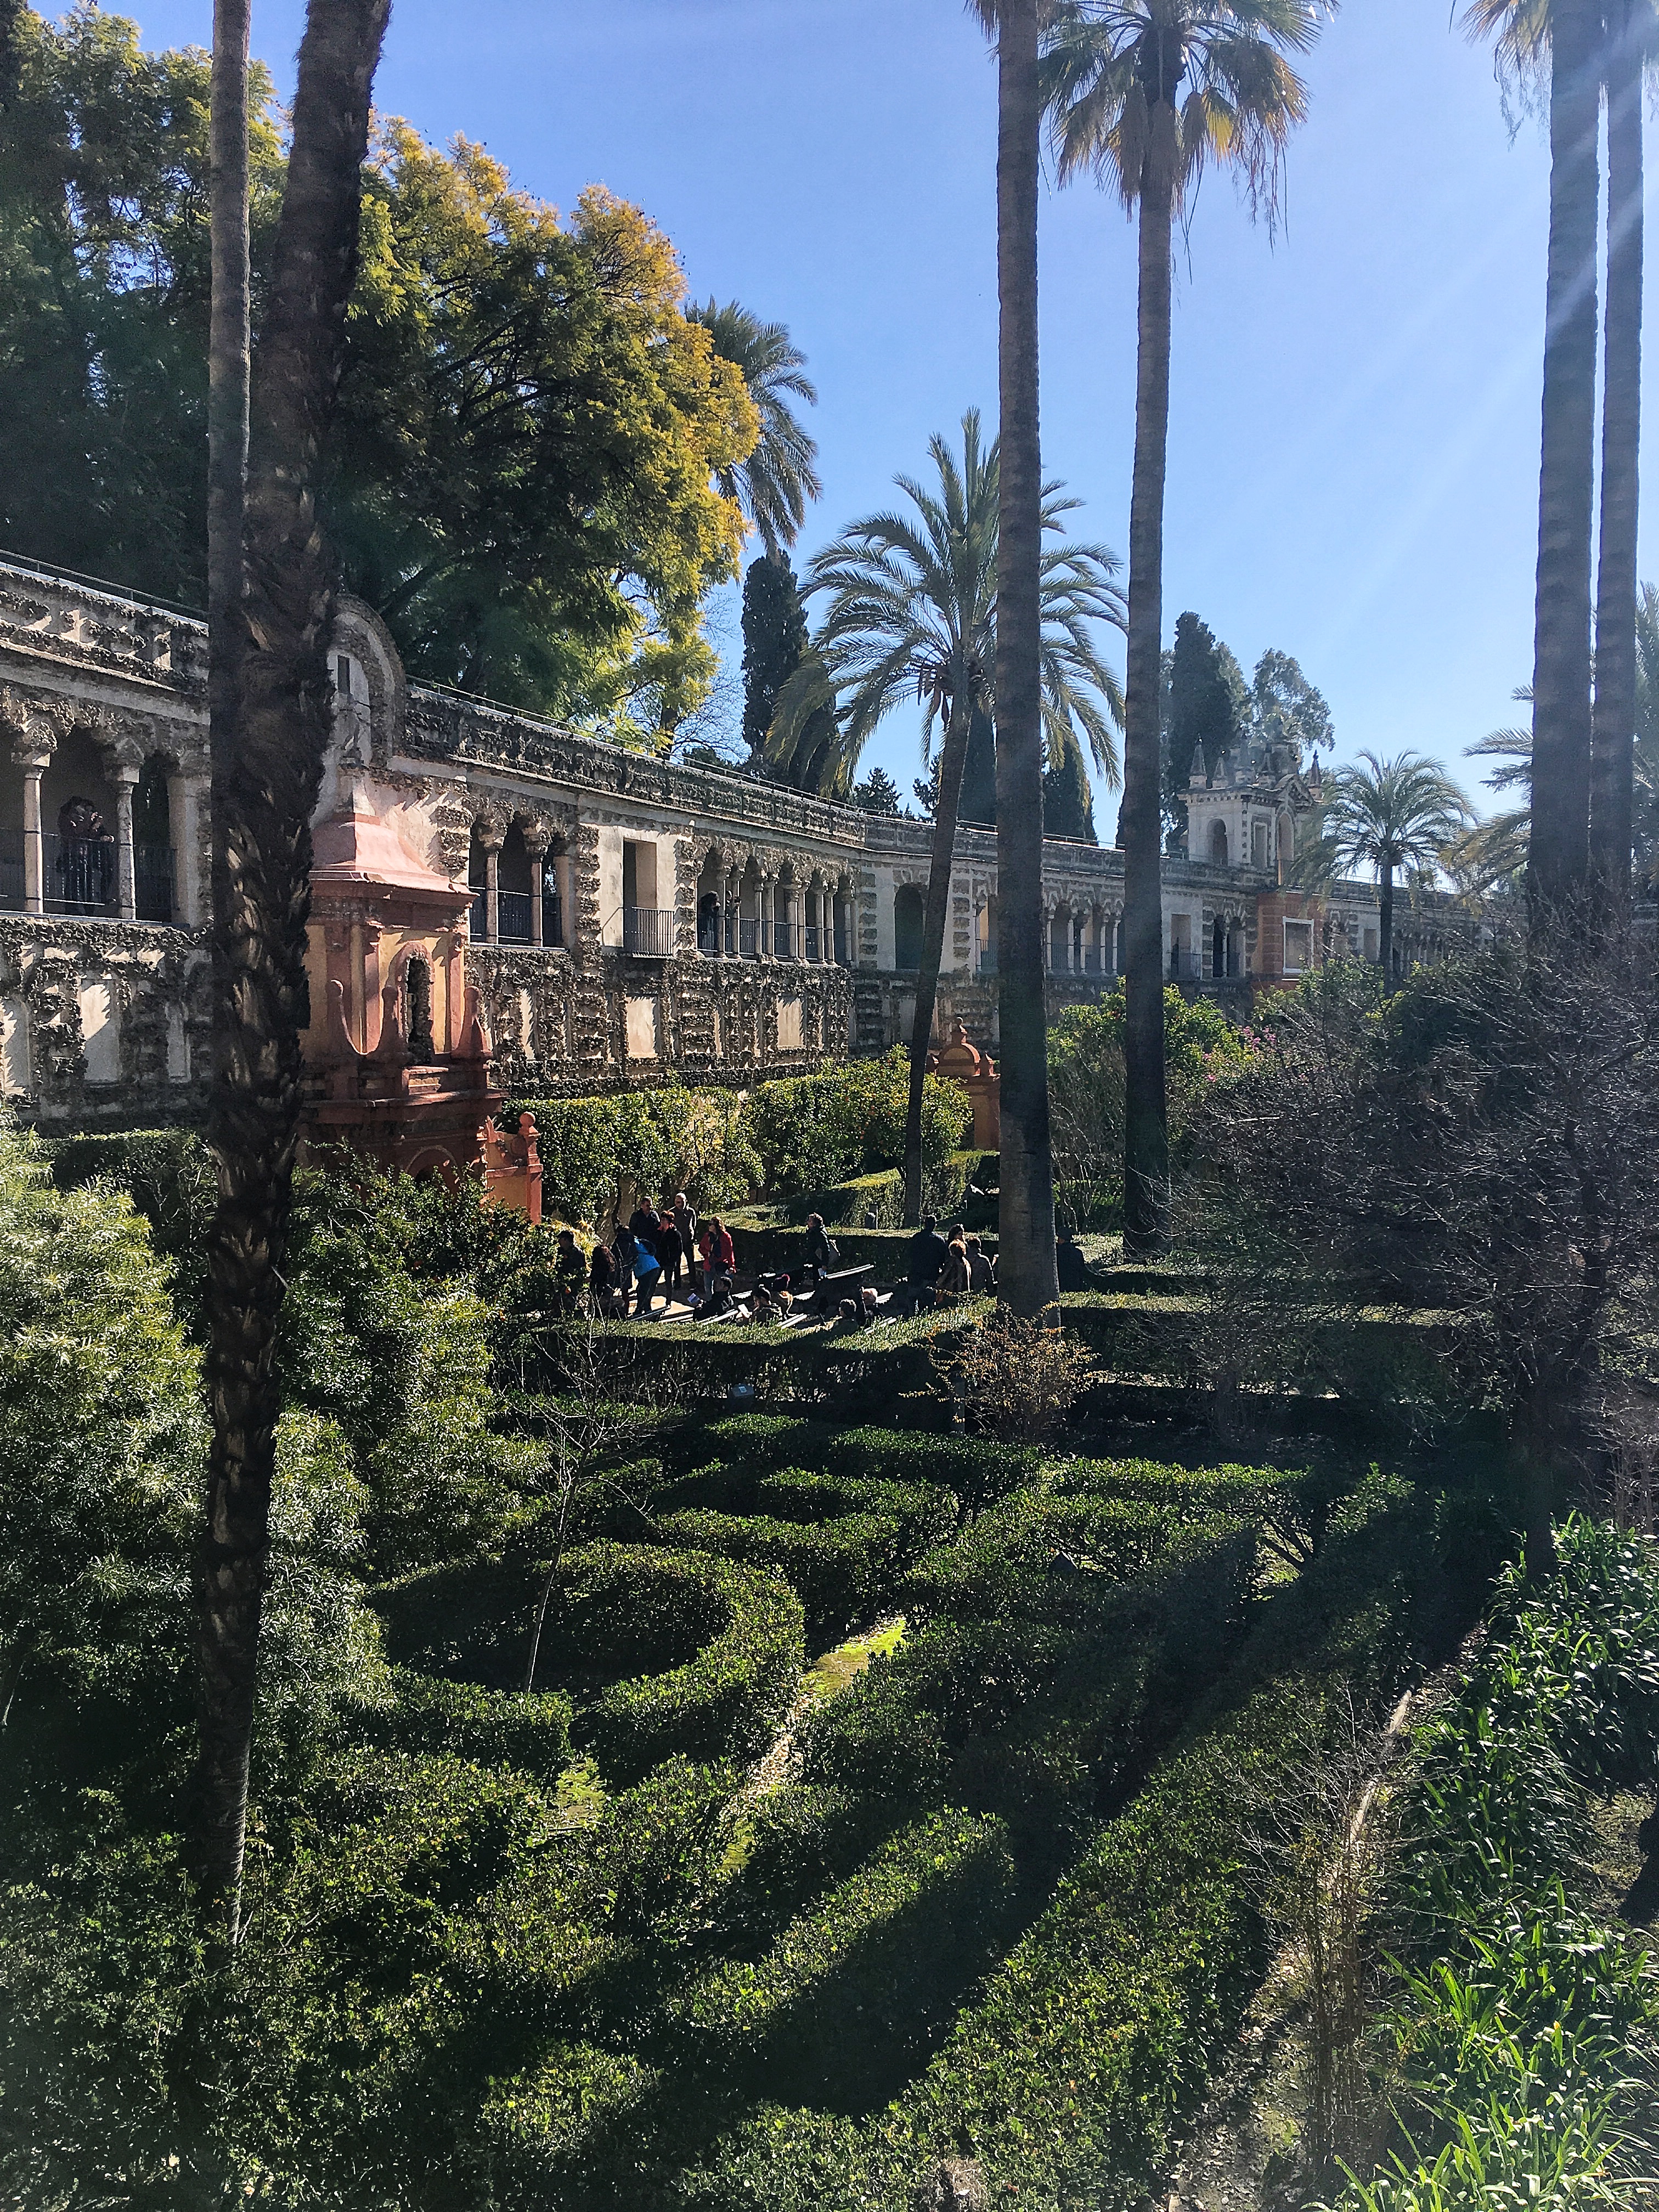 Gardens of the Real Alcazar